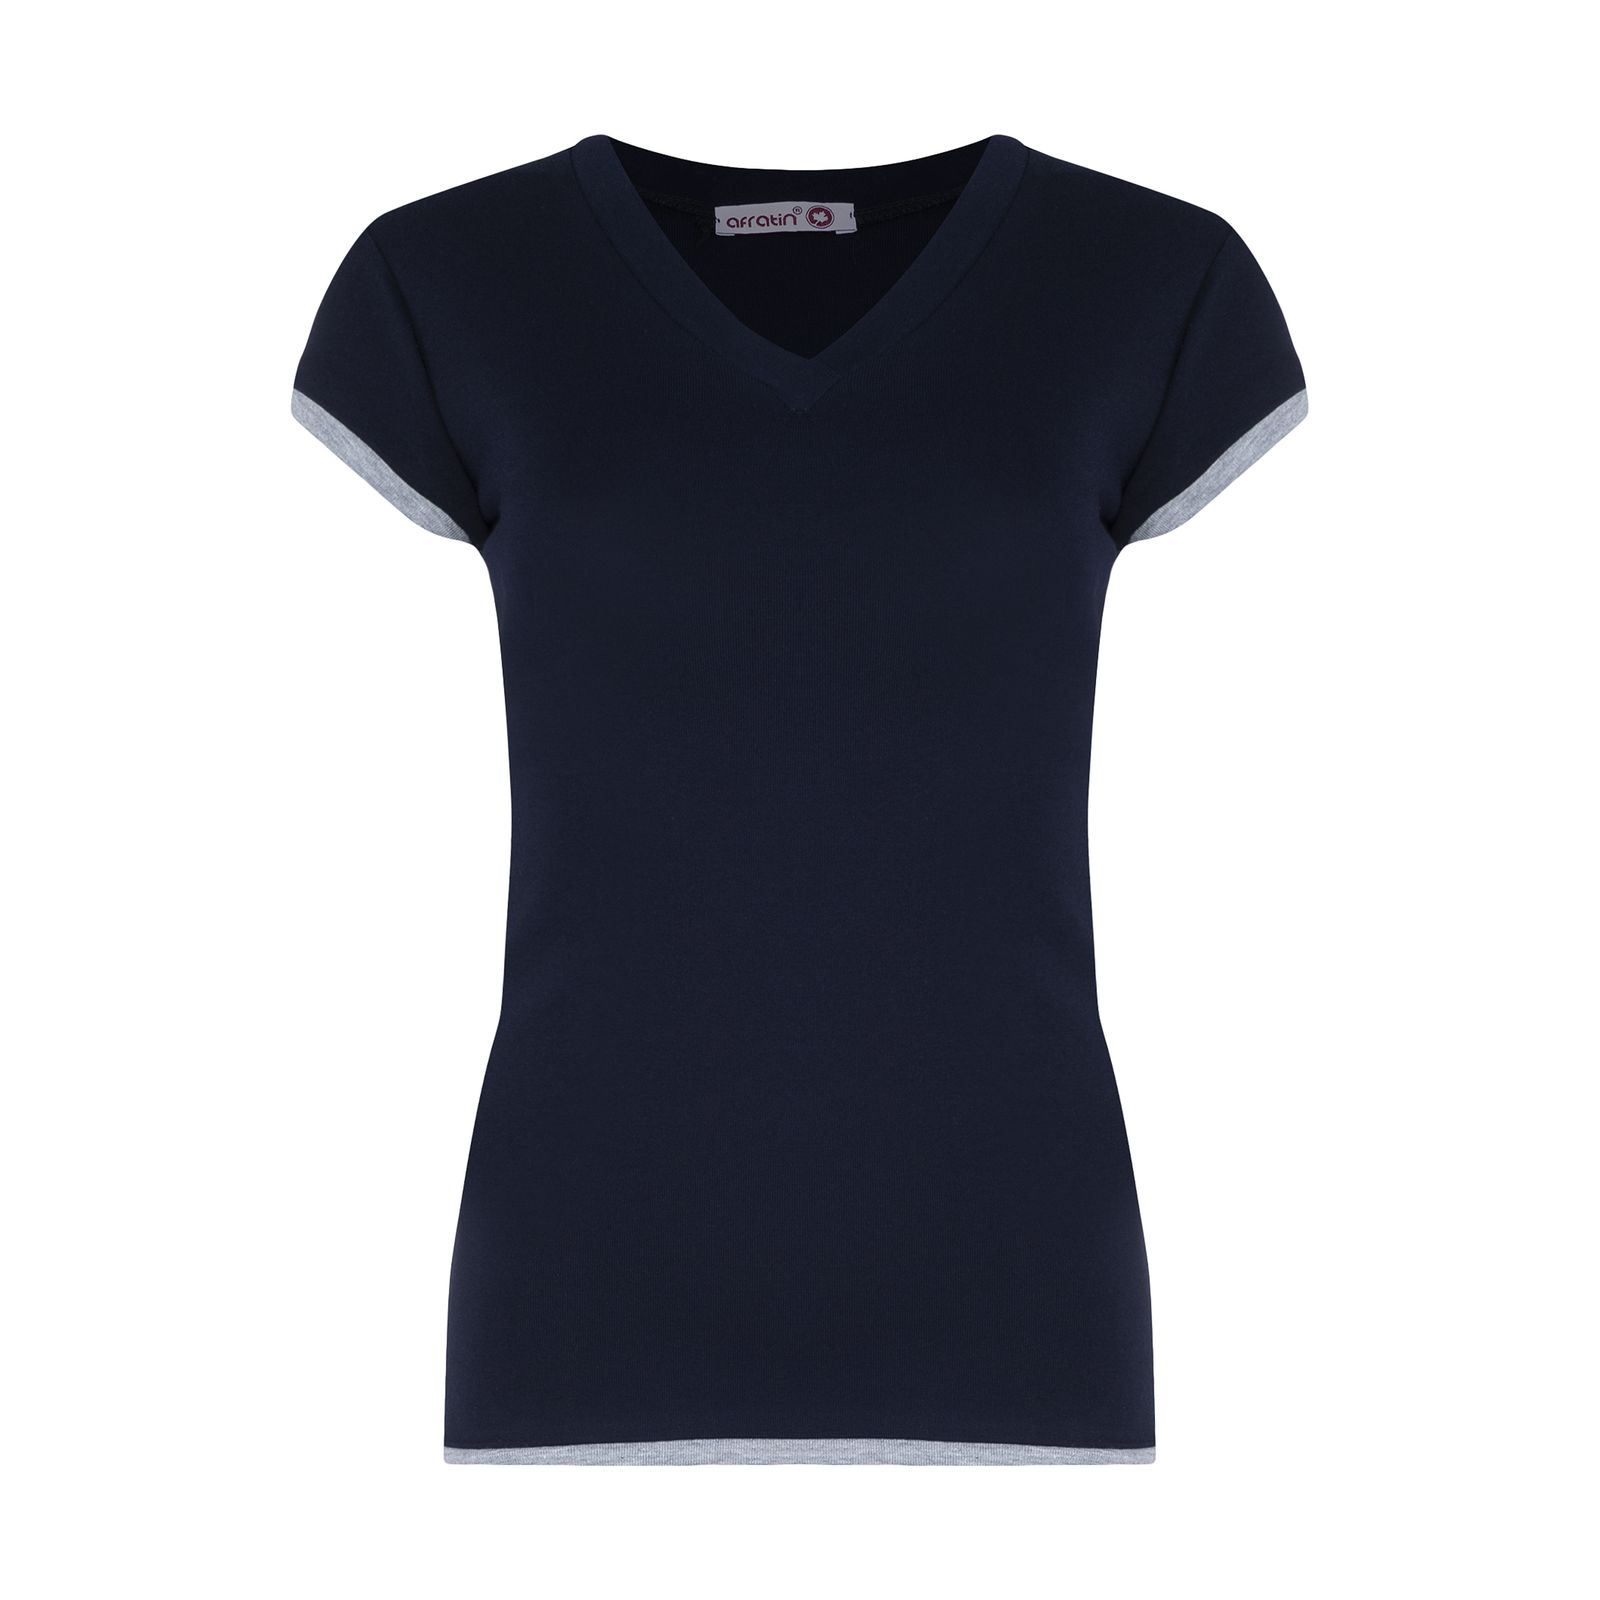 تی شرت زنانه افراتین کد 2556 رنگ سرمه ای -  - 1